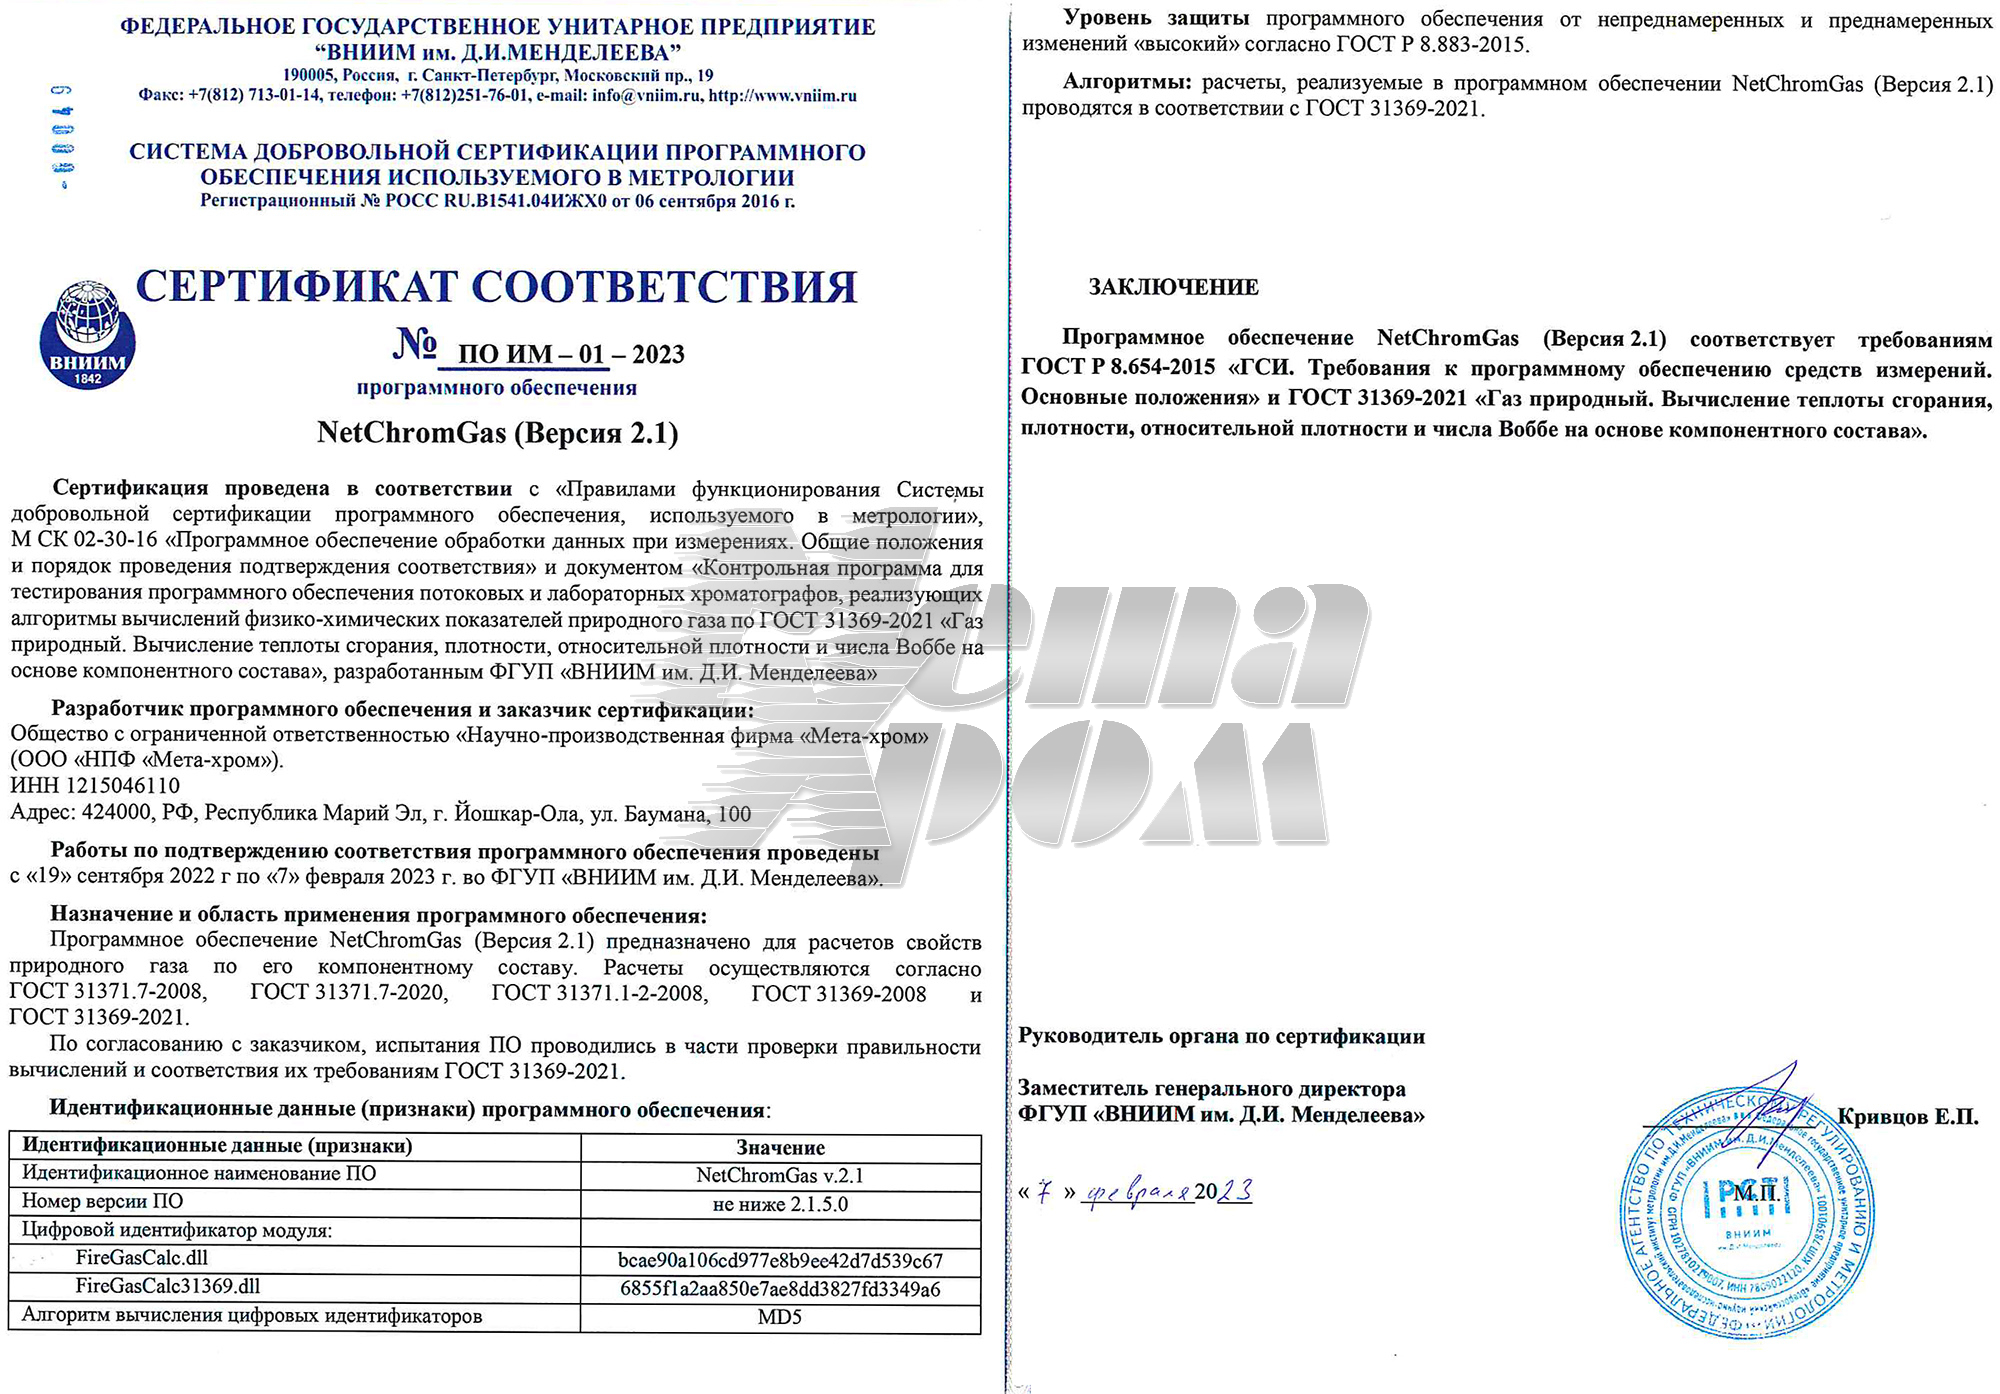 Сертификат NetChromGas № ПО ИМ-01-2023